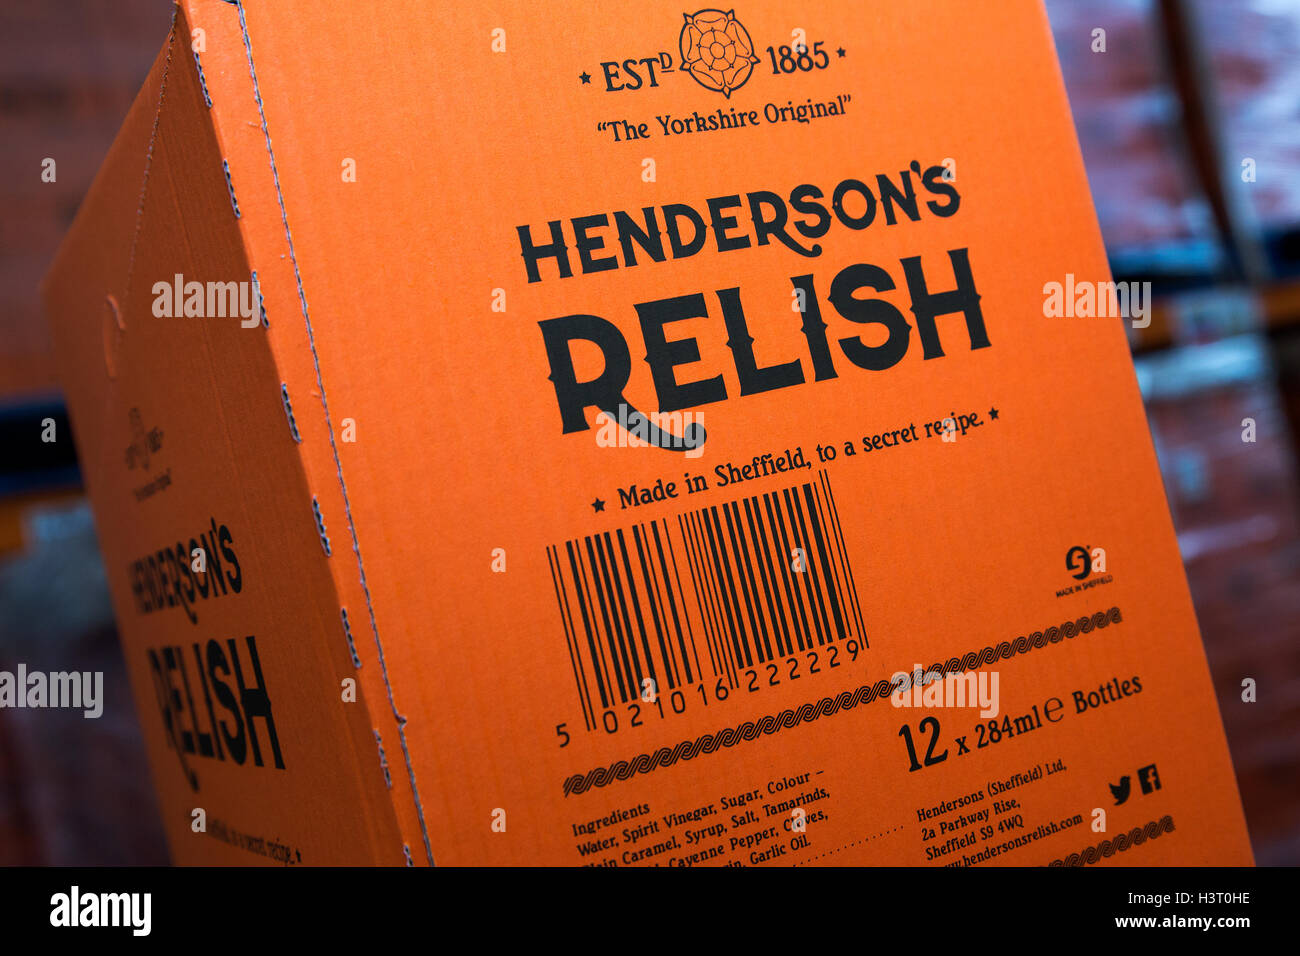 Hendersons Relish condiment similaire à la sauce Worcester plaisir a été produit en Sheffield, Yorkshire du Sud depuis 1885 Banque D'Images